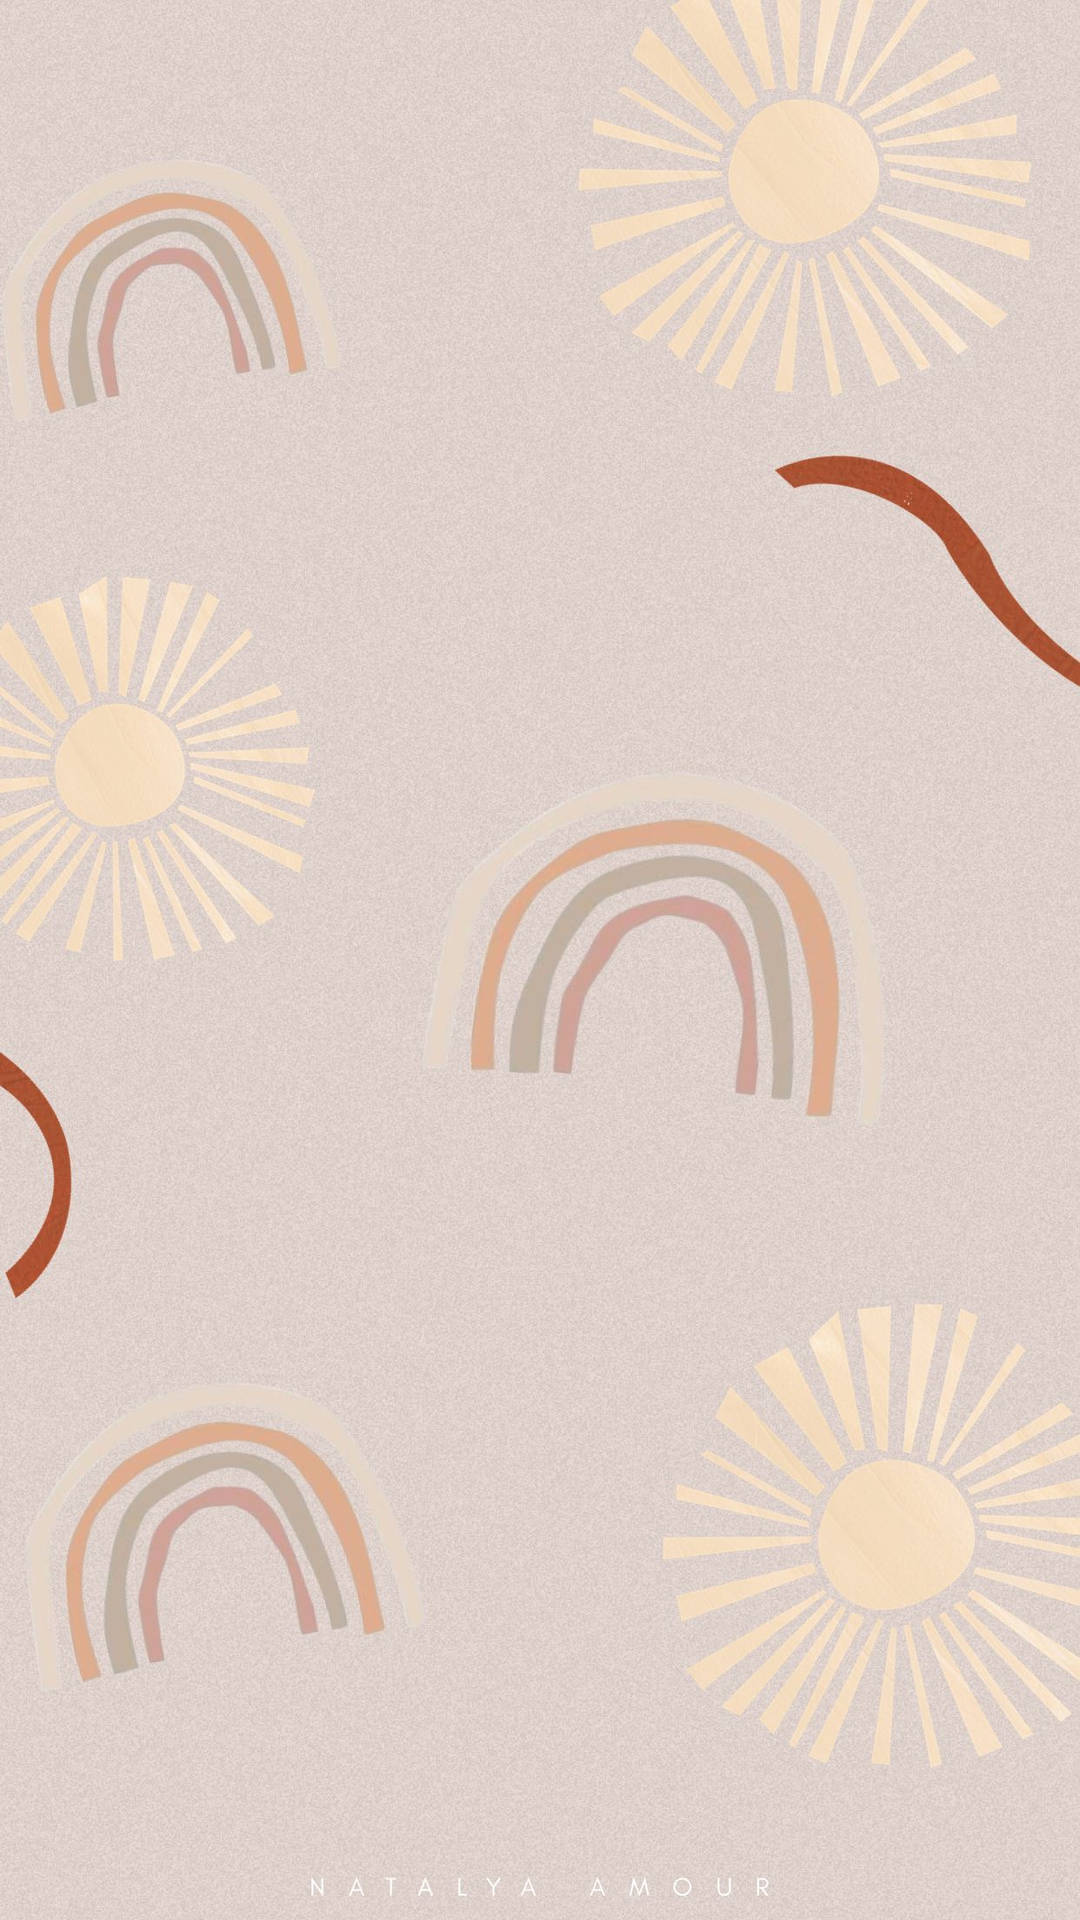 Boho Iphone Suns, Rainbows, And Ribbons Wallpaper